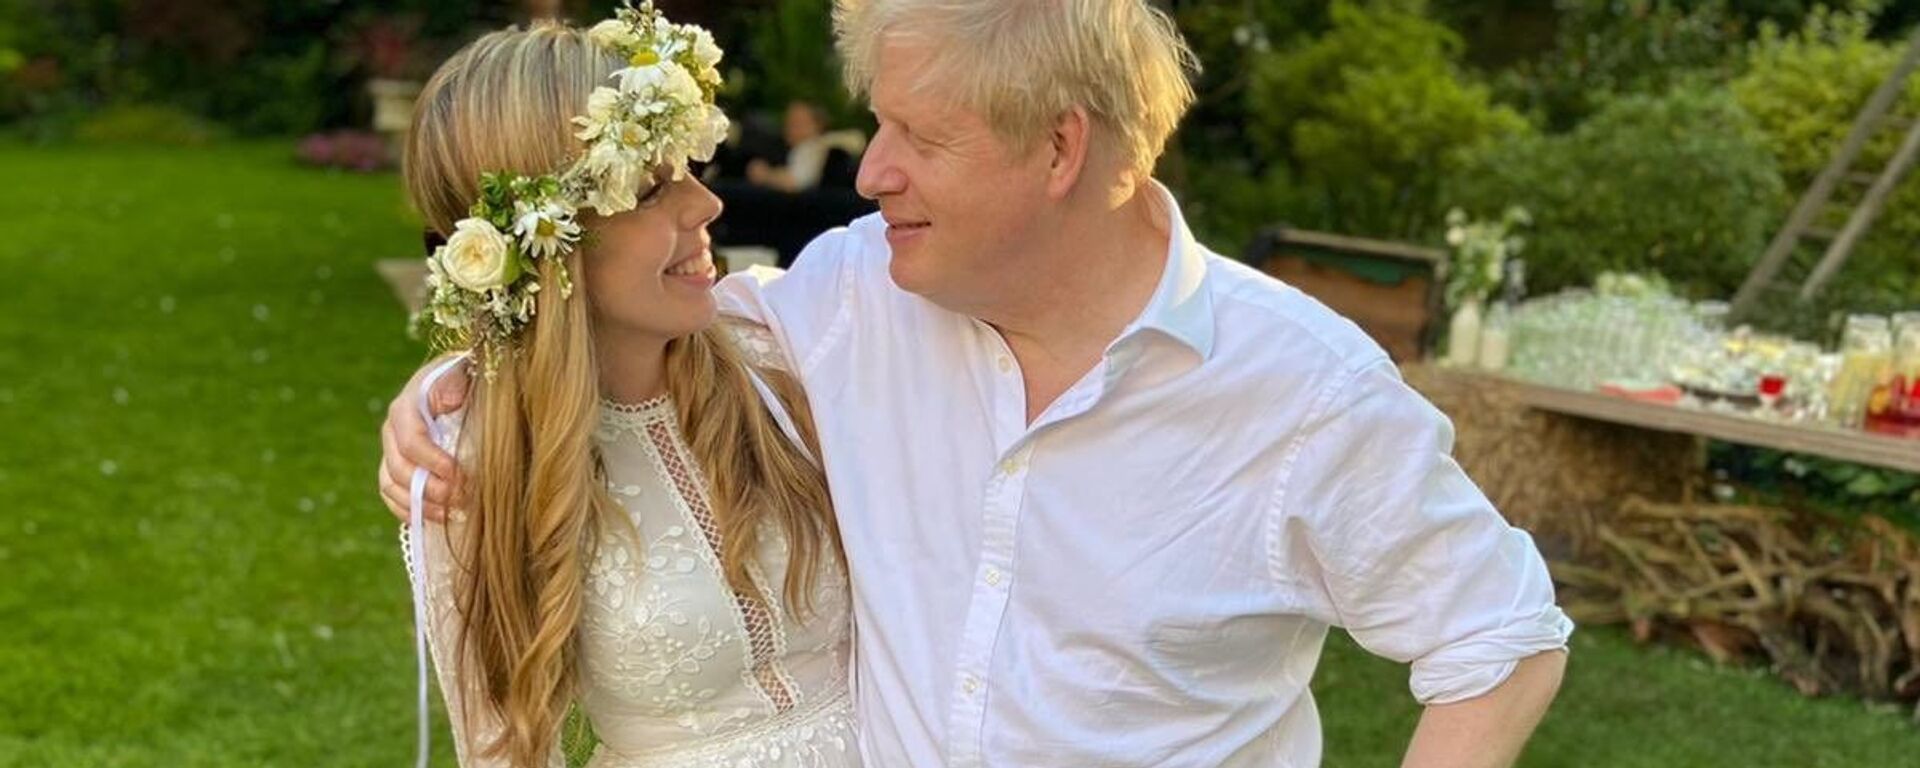 İngiltere Başbakanı Boris Johnson, nişanlısı Carrie Symonds ile gizli bir törenle evlendi. Başbakanlık ofisinden bir sözcü, evliliğin dün öğleden sonra 'küçük bir törenle' gerçekleştiğini belirterek, çiftin gelecek yaz aile ve arkadaşlarıyla tekrar kutlama yapacağını ve balayının da o zamana kadar erteleneceğini kaydetti. - Sputnik Türkiye, 1920, 08.07.2022